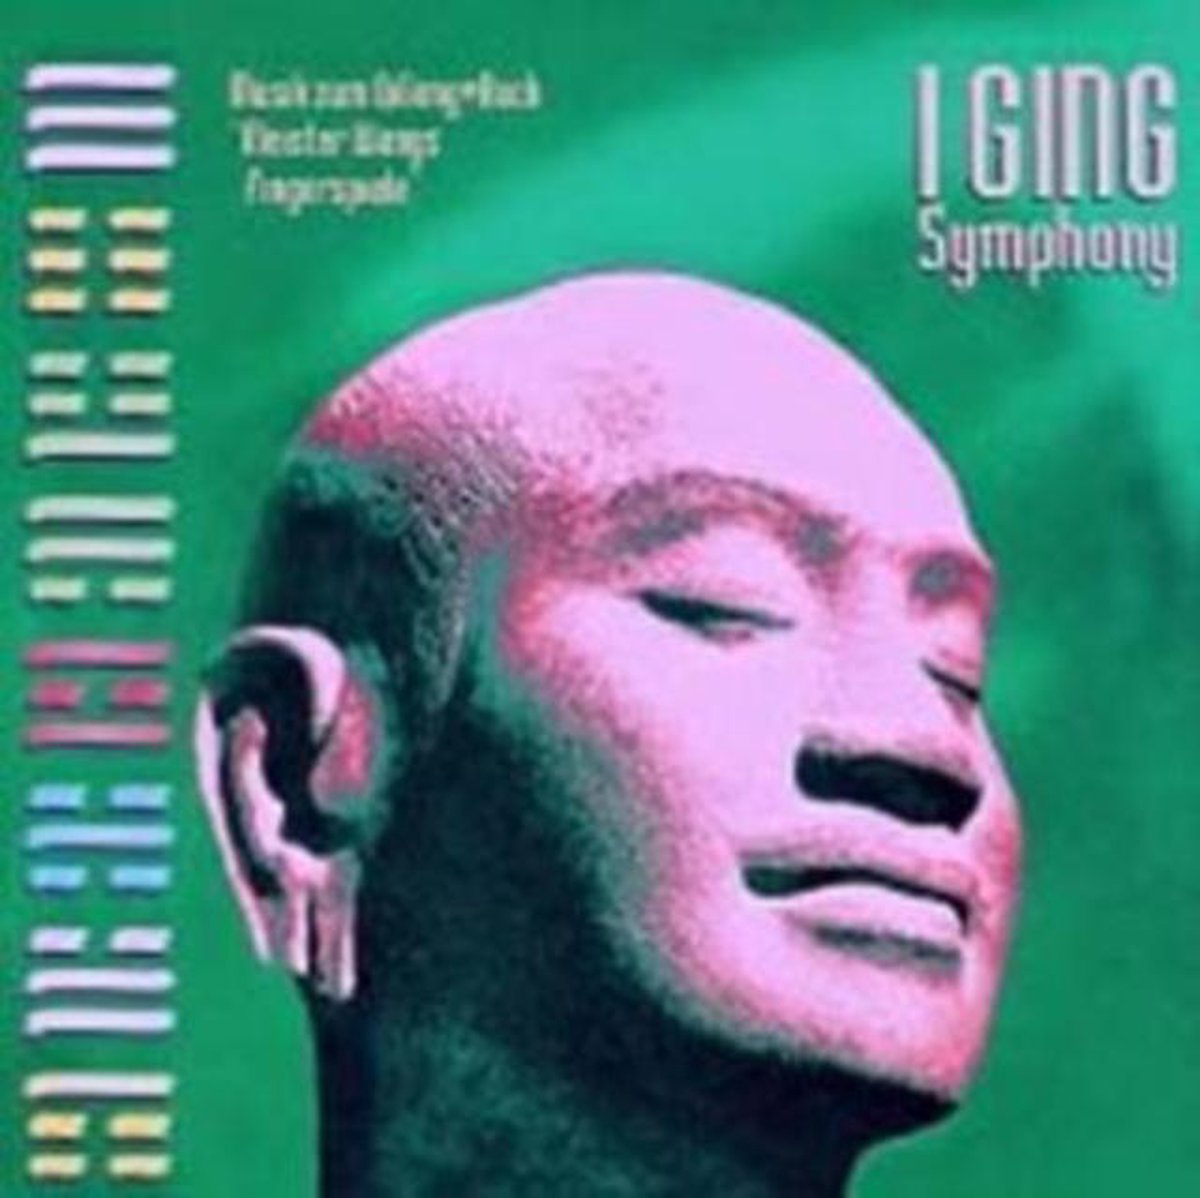 I Ging Symphony - Frank Steiner Jr.